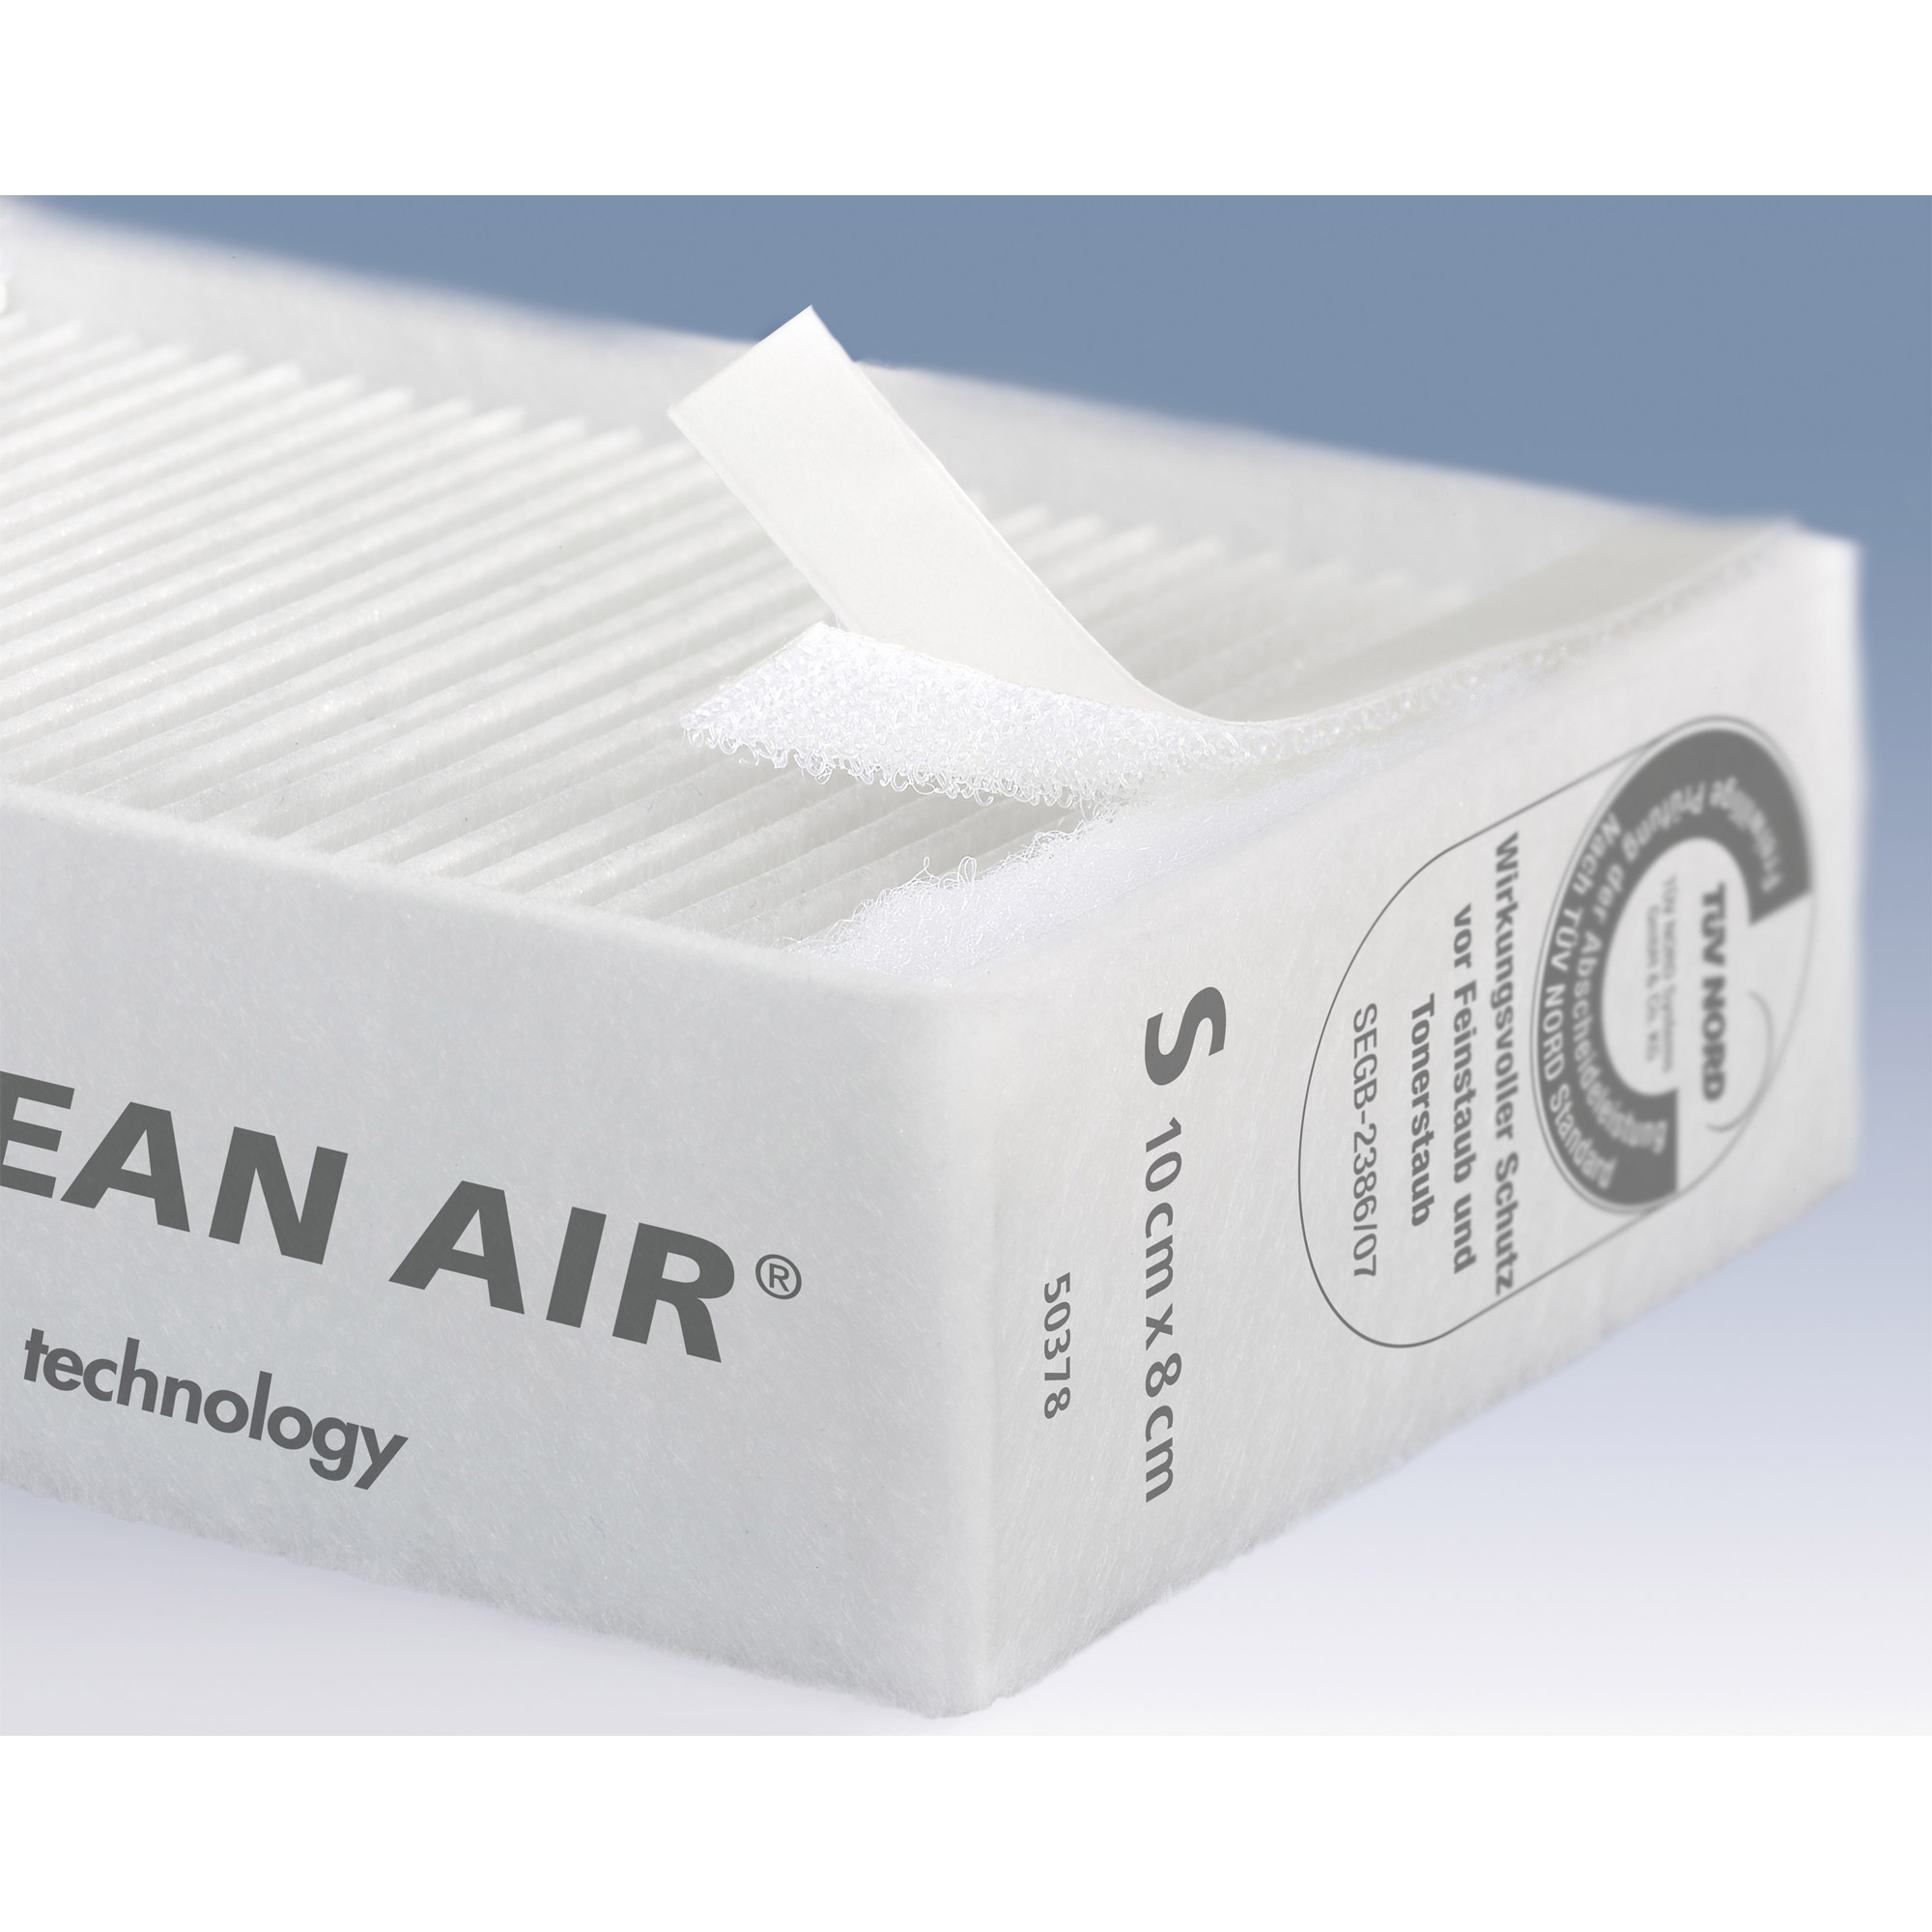 Tesa Clean Air Medium - Luftfilter